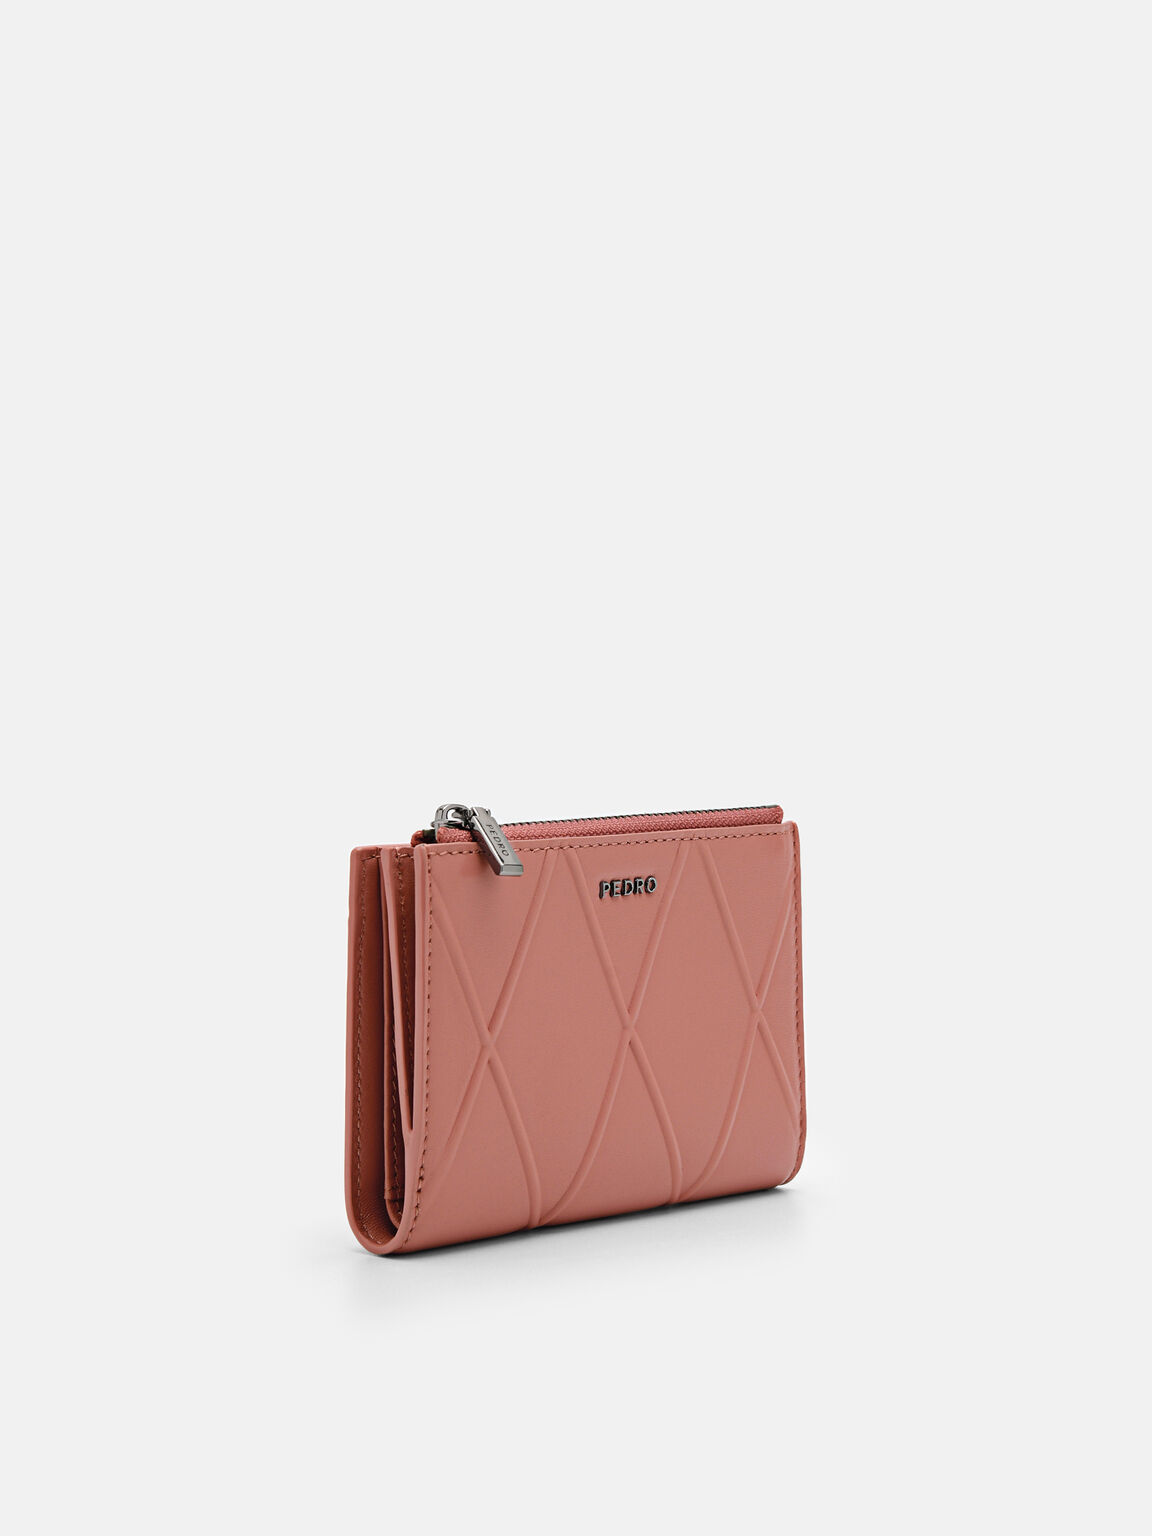 Leather Bi-Fold Wallet, Blush